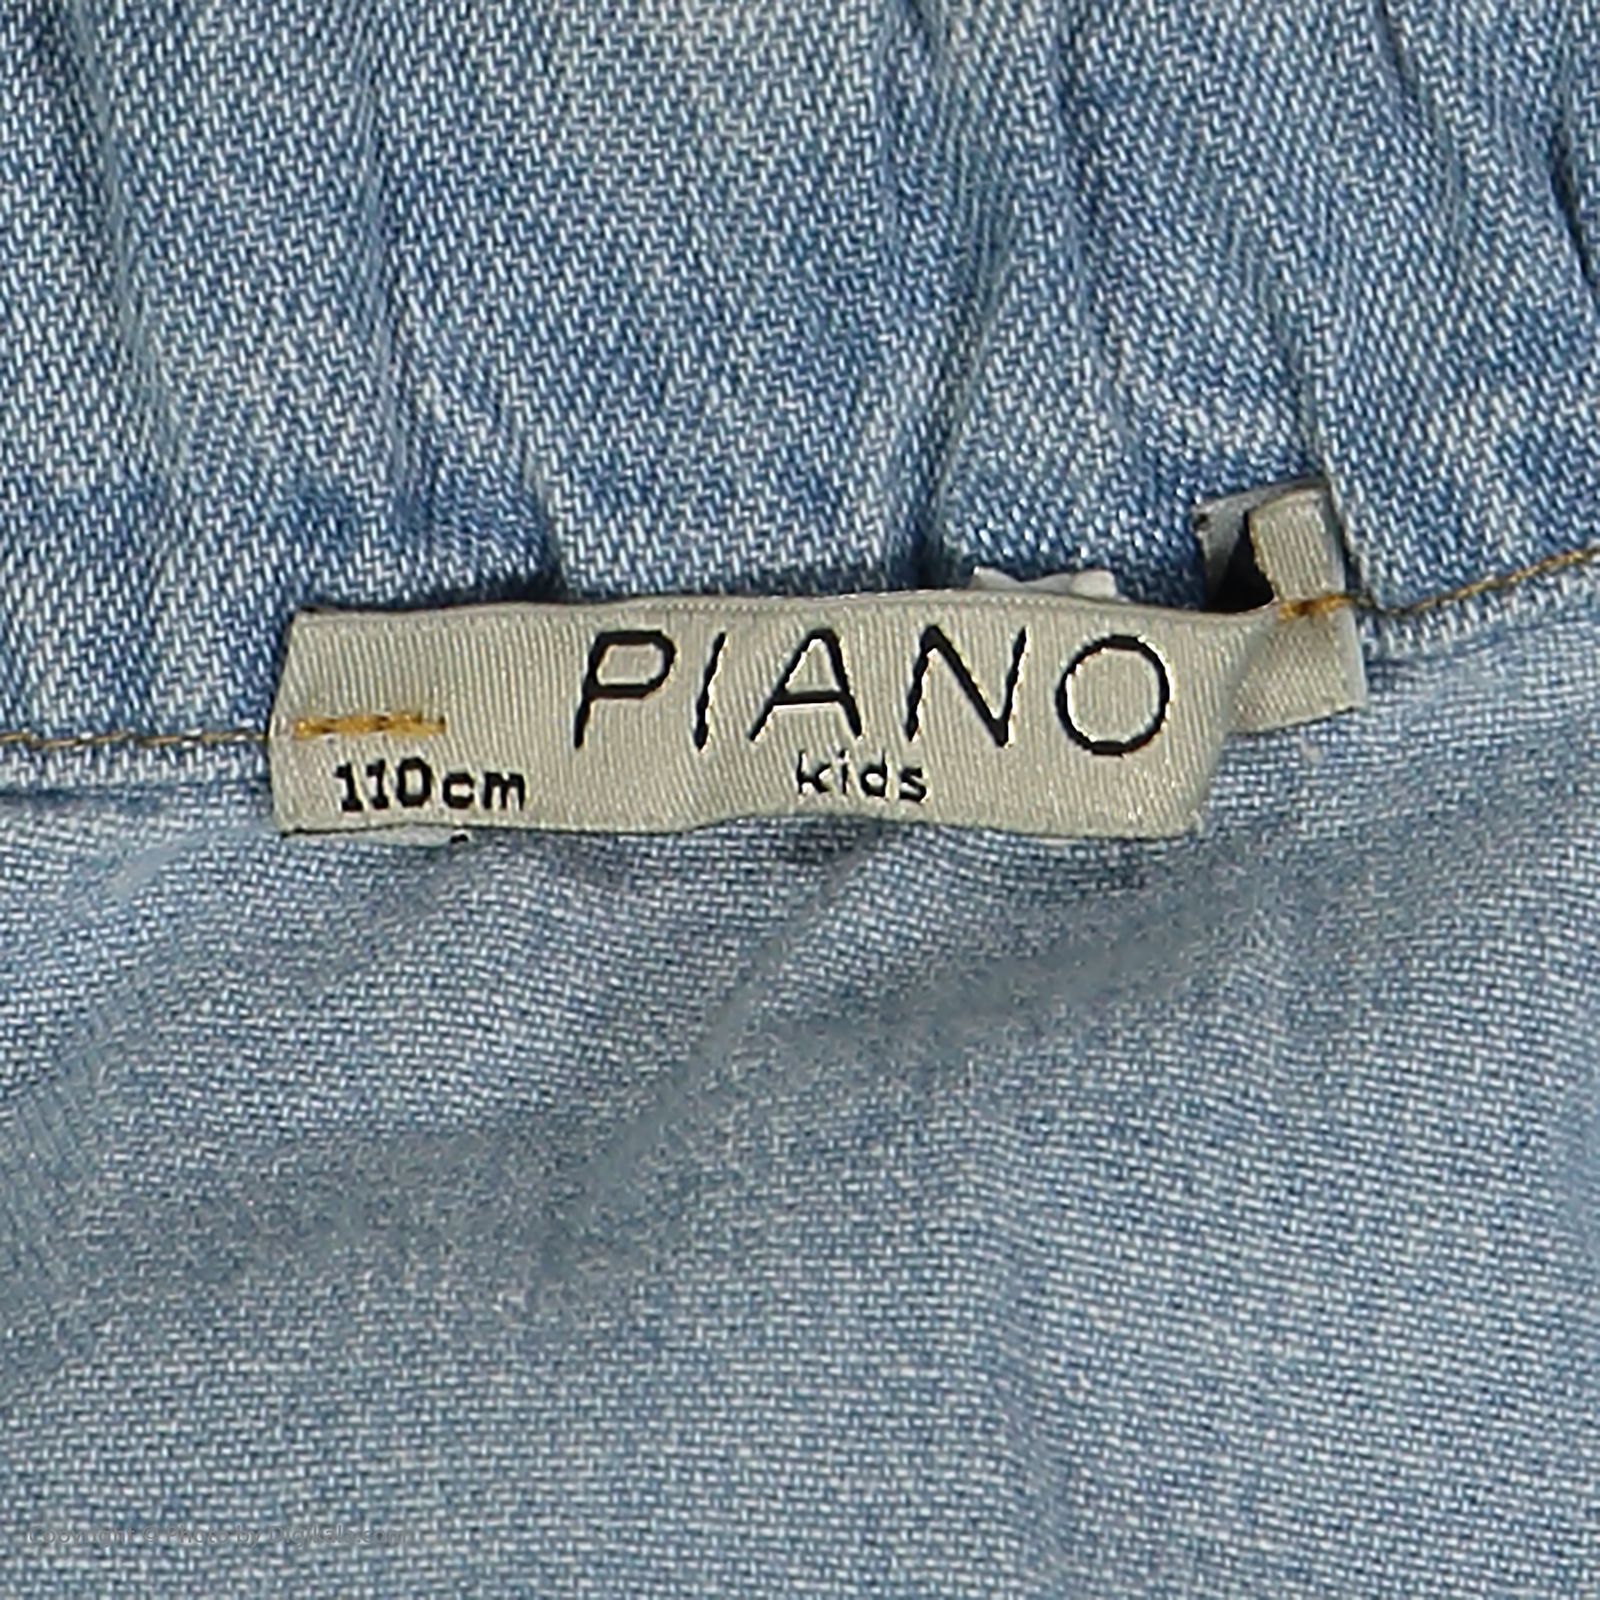 دامن دخترانه پیانو مدل 01421-58 -  - 5